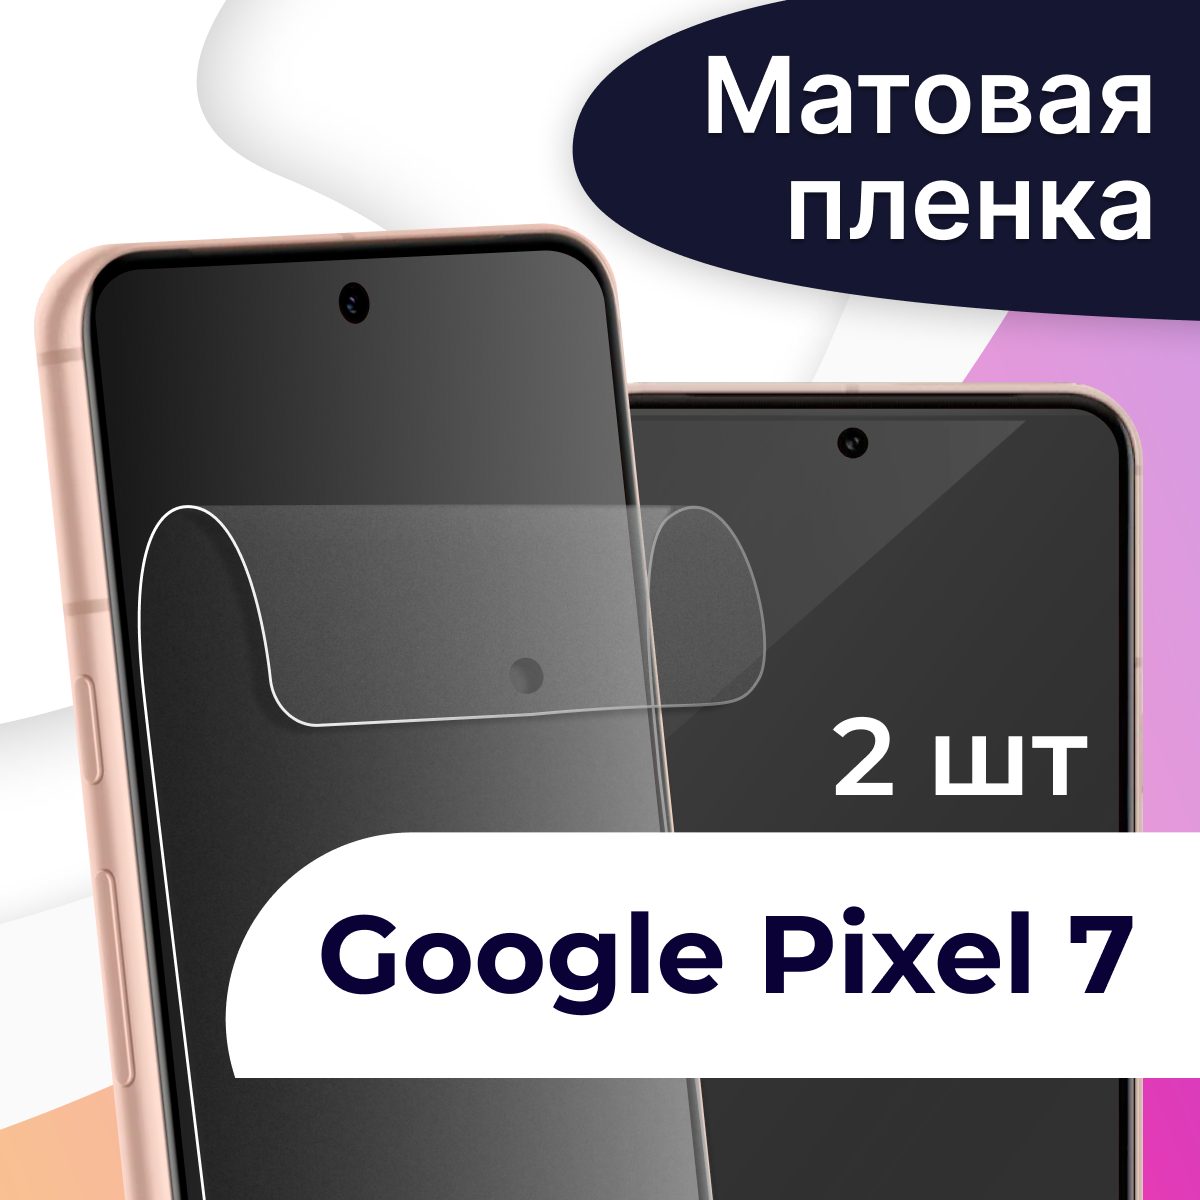 Матовая пленка на телефон Google Pixel 7 / Гидрогелевая противоударная пленка для смартфона Гугл Пиксель 7 / Защитная пленка